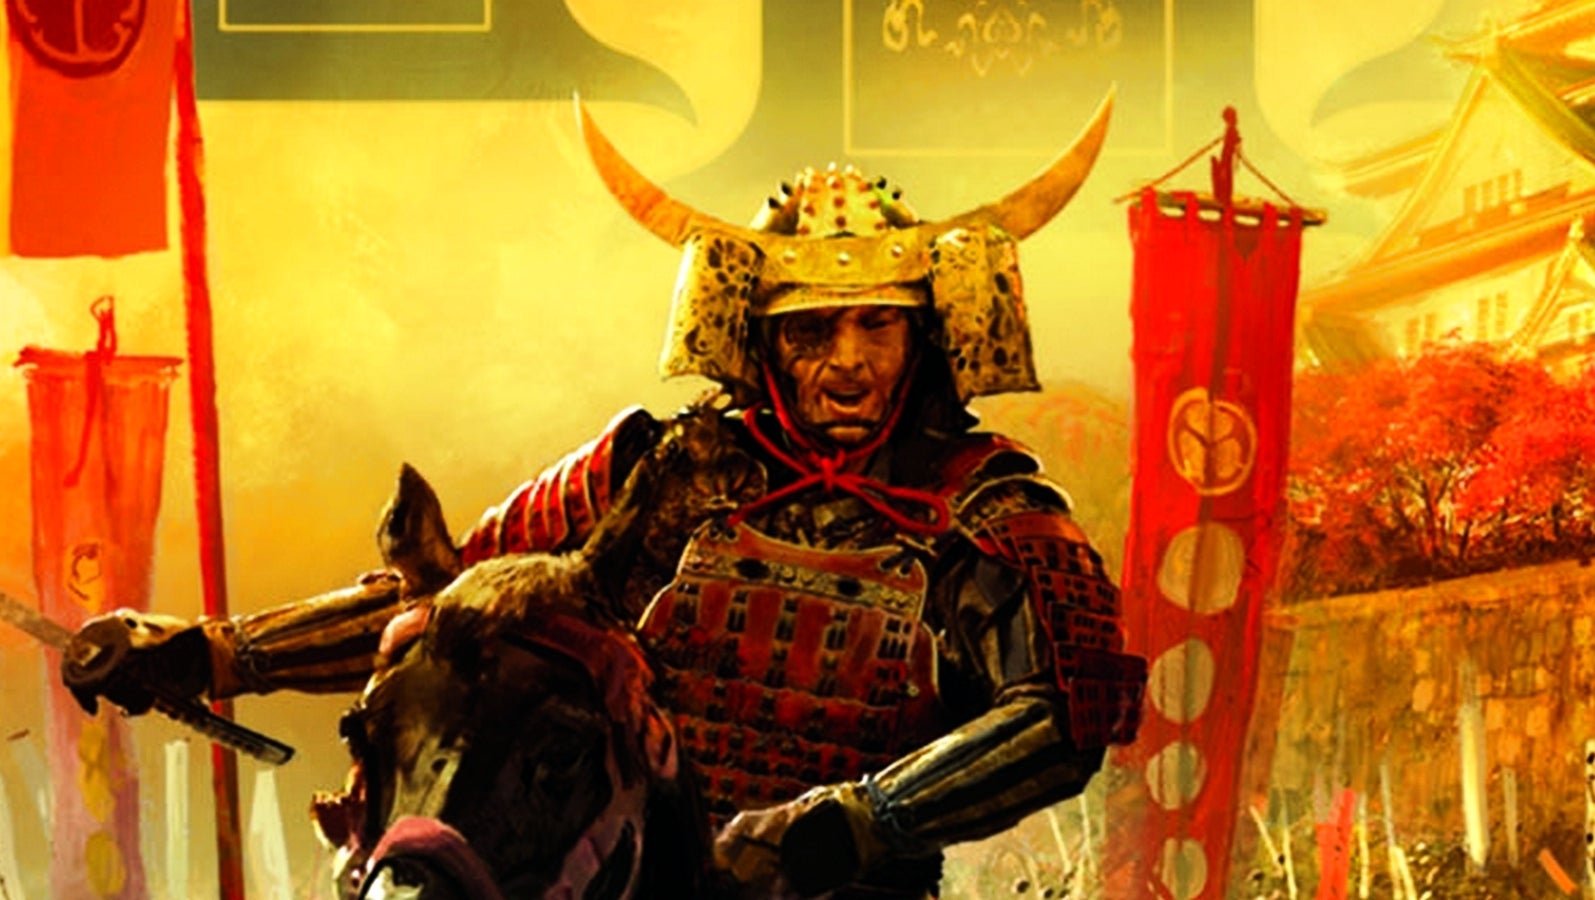 Bilder zu Age of Empires 3 Definitive Edition: Microsoft deutet Neuigkeiten oder Release zur gamescom an